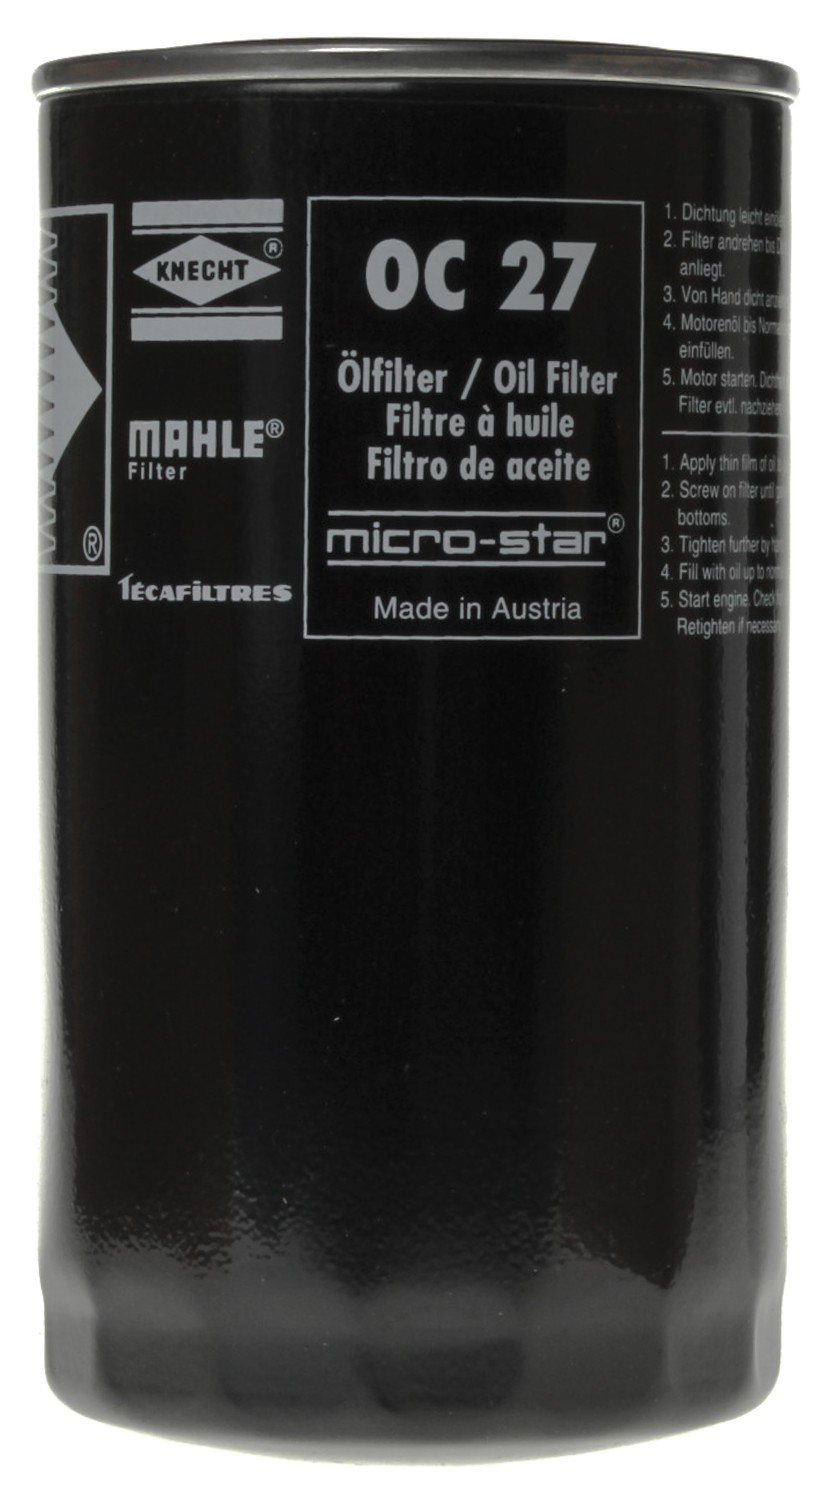 OC27_MAHLE Engine Oil Filter